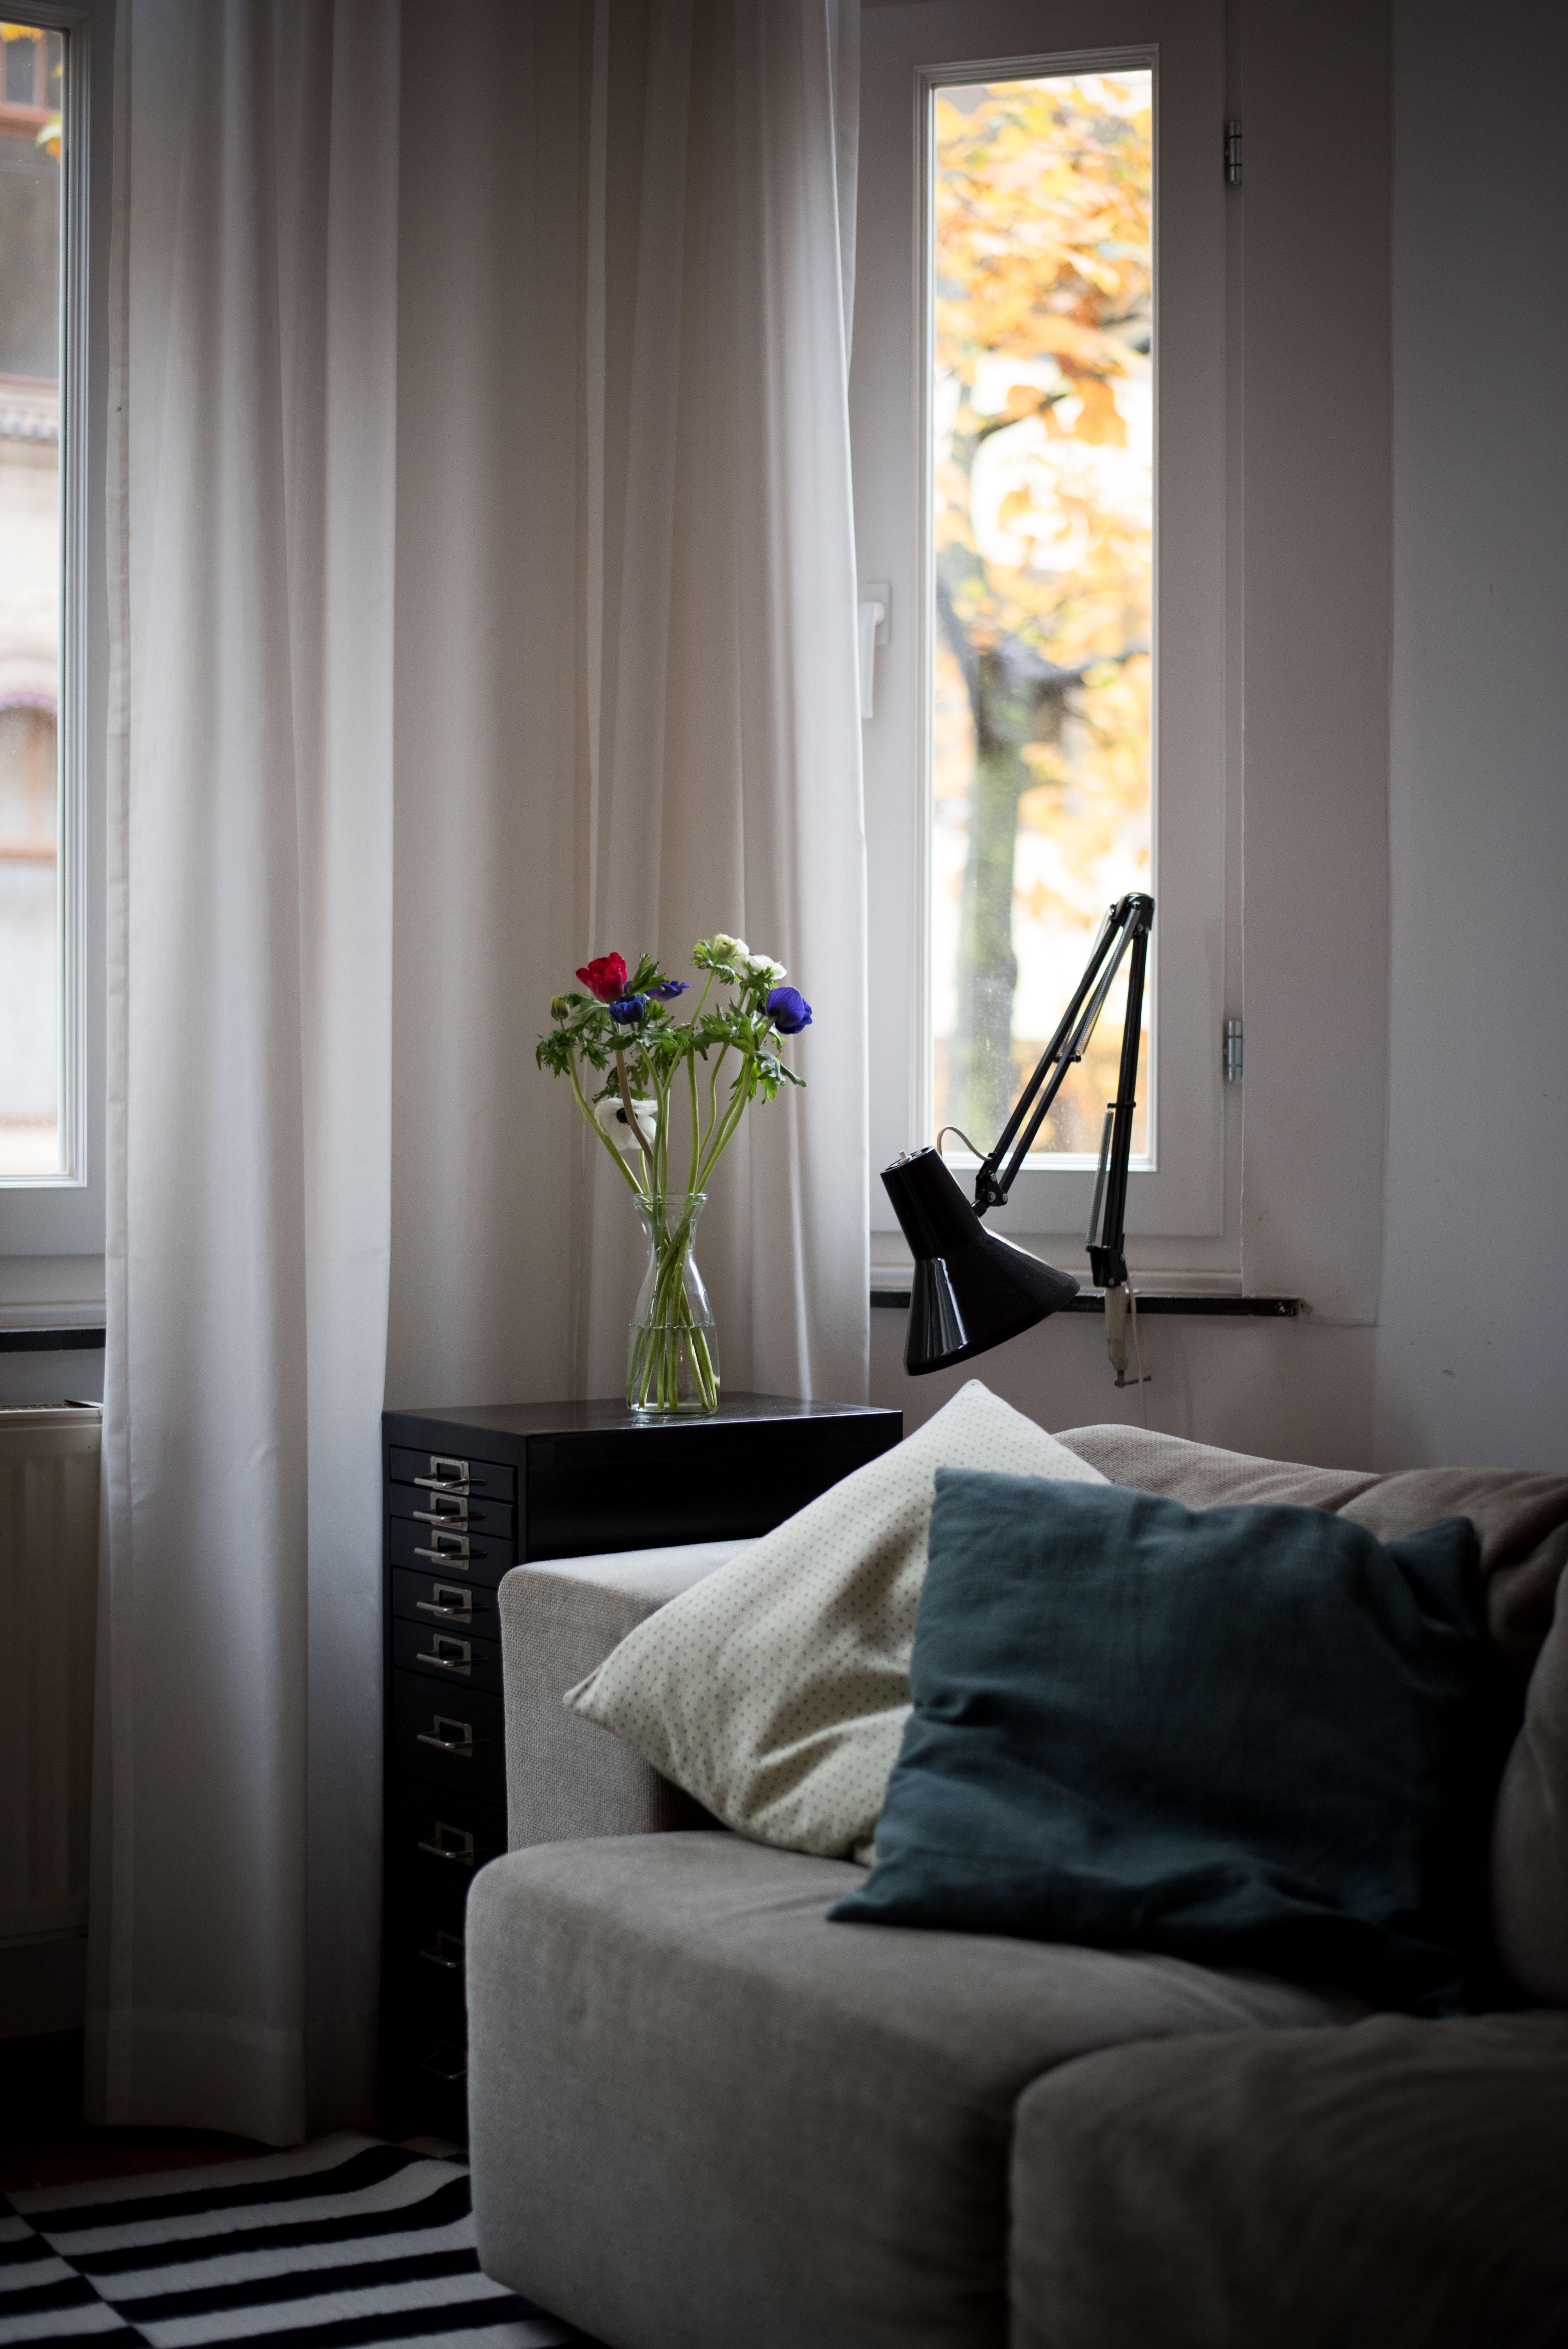 Habts gemütlich heute!
#interior #wohnzimmer #cozyplace #altbau